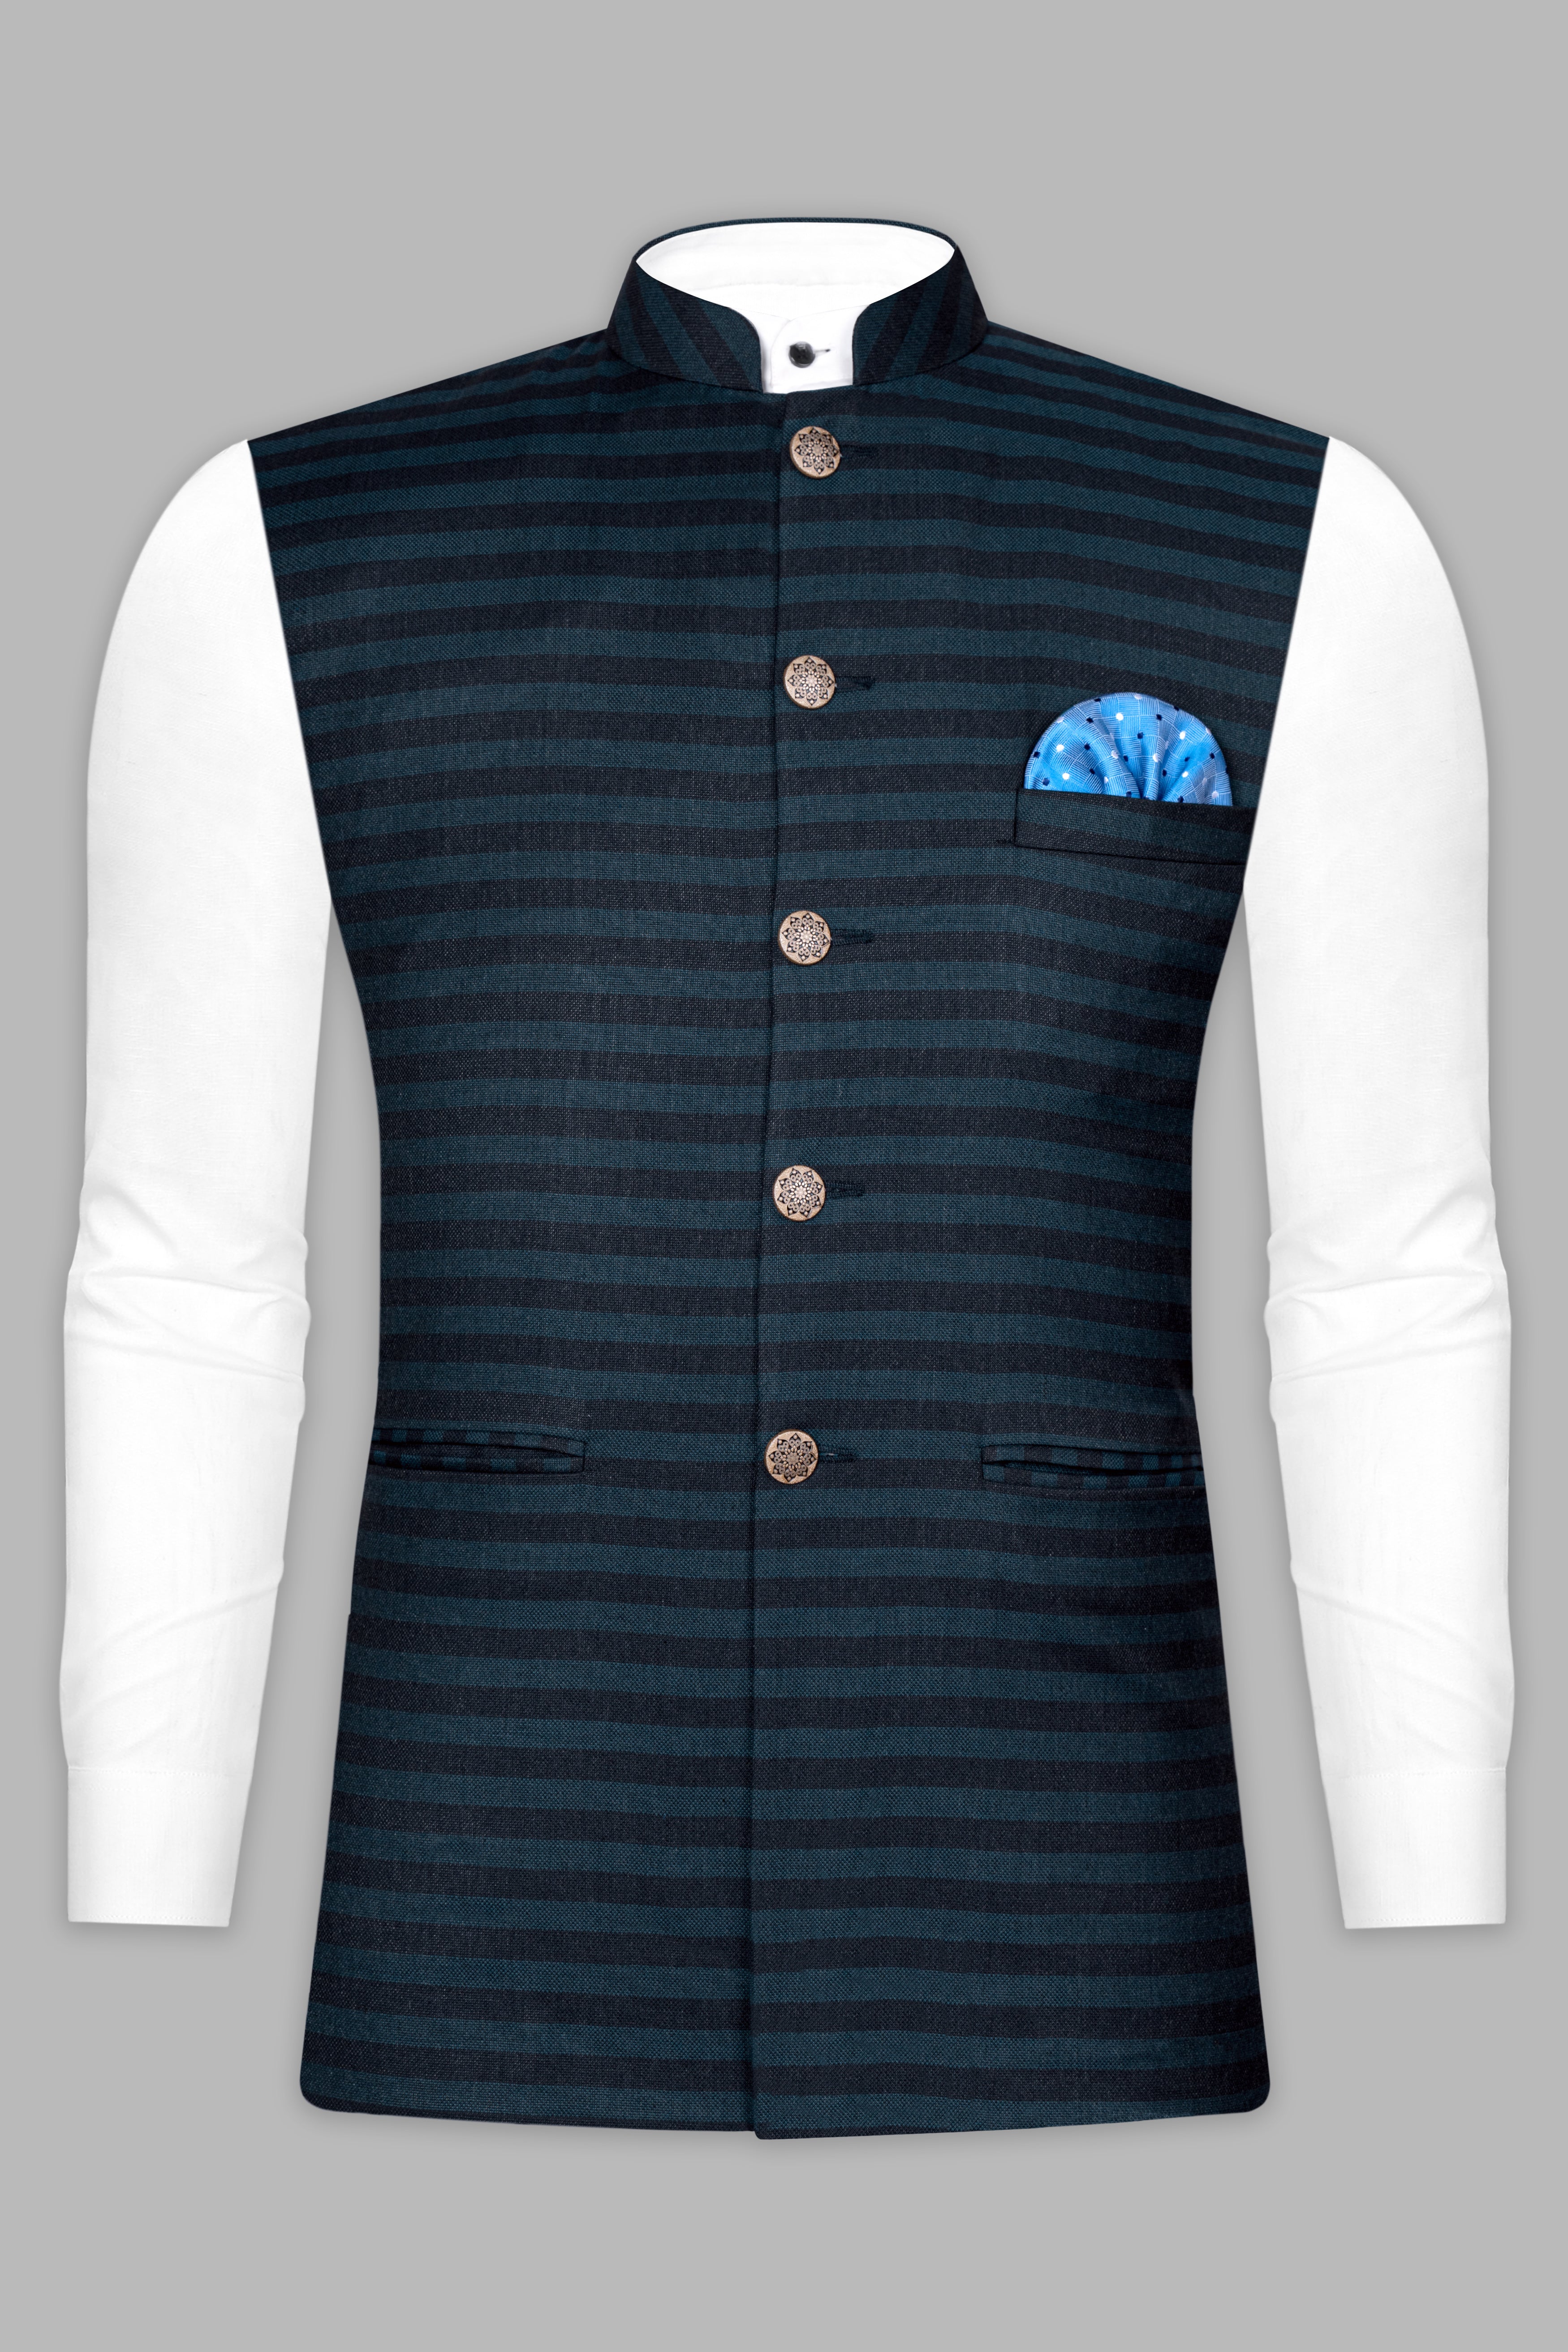 Bluish Blue And Jade Black Striped Nehru jacket